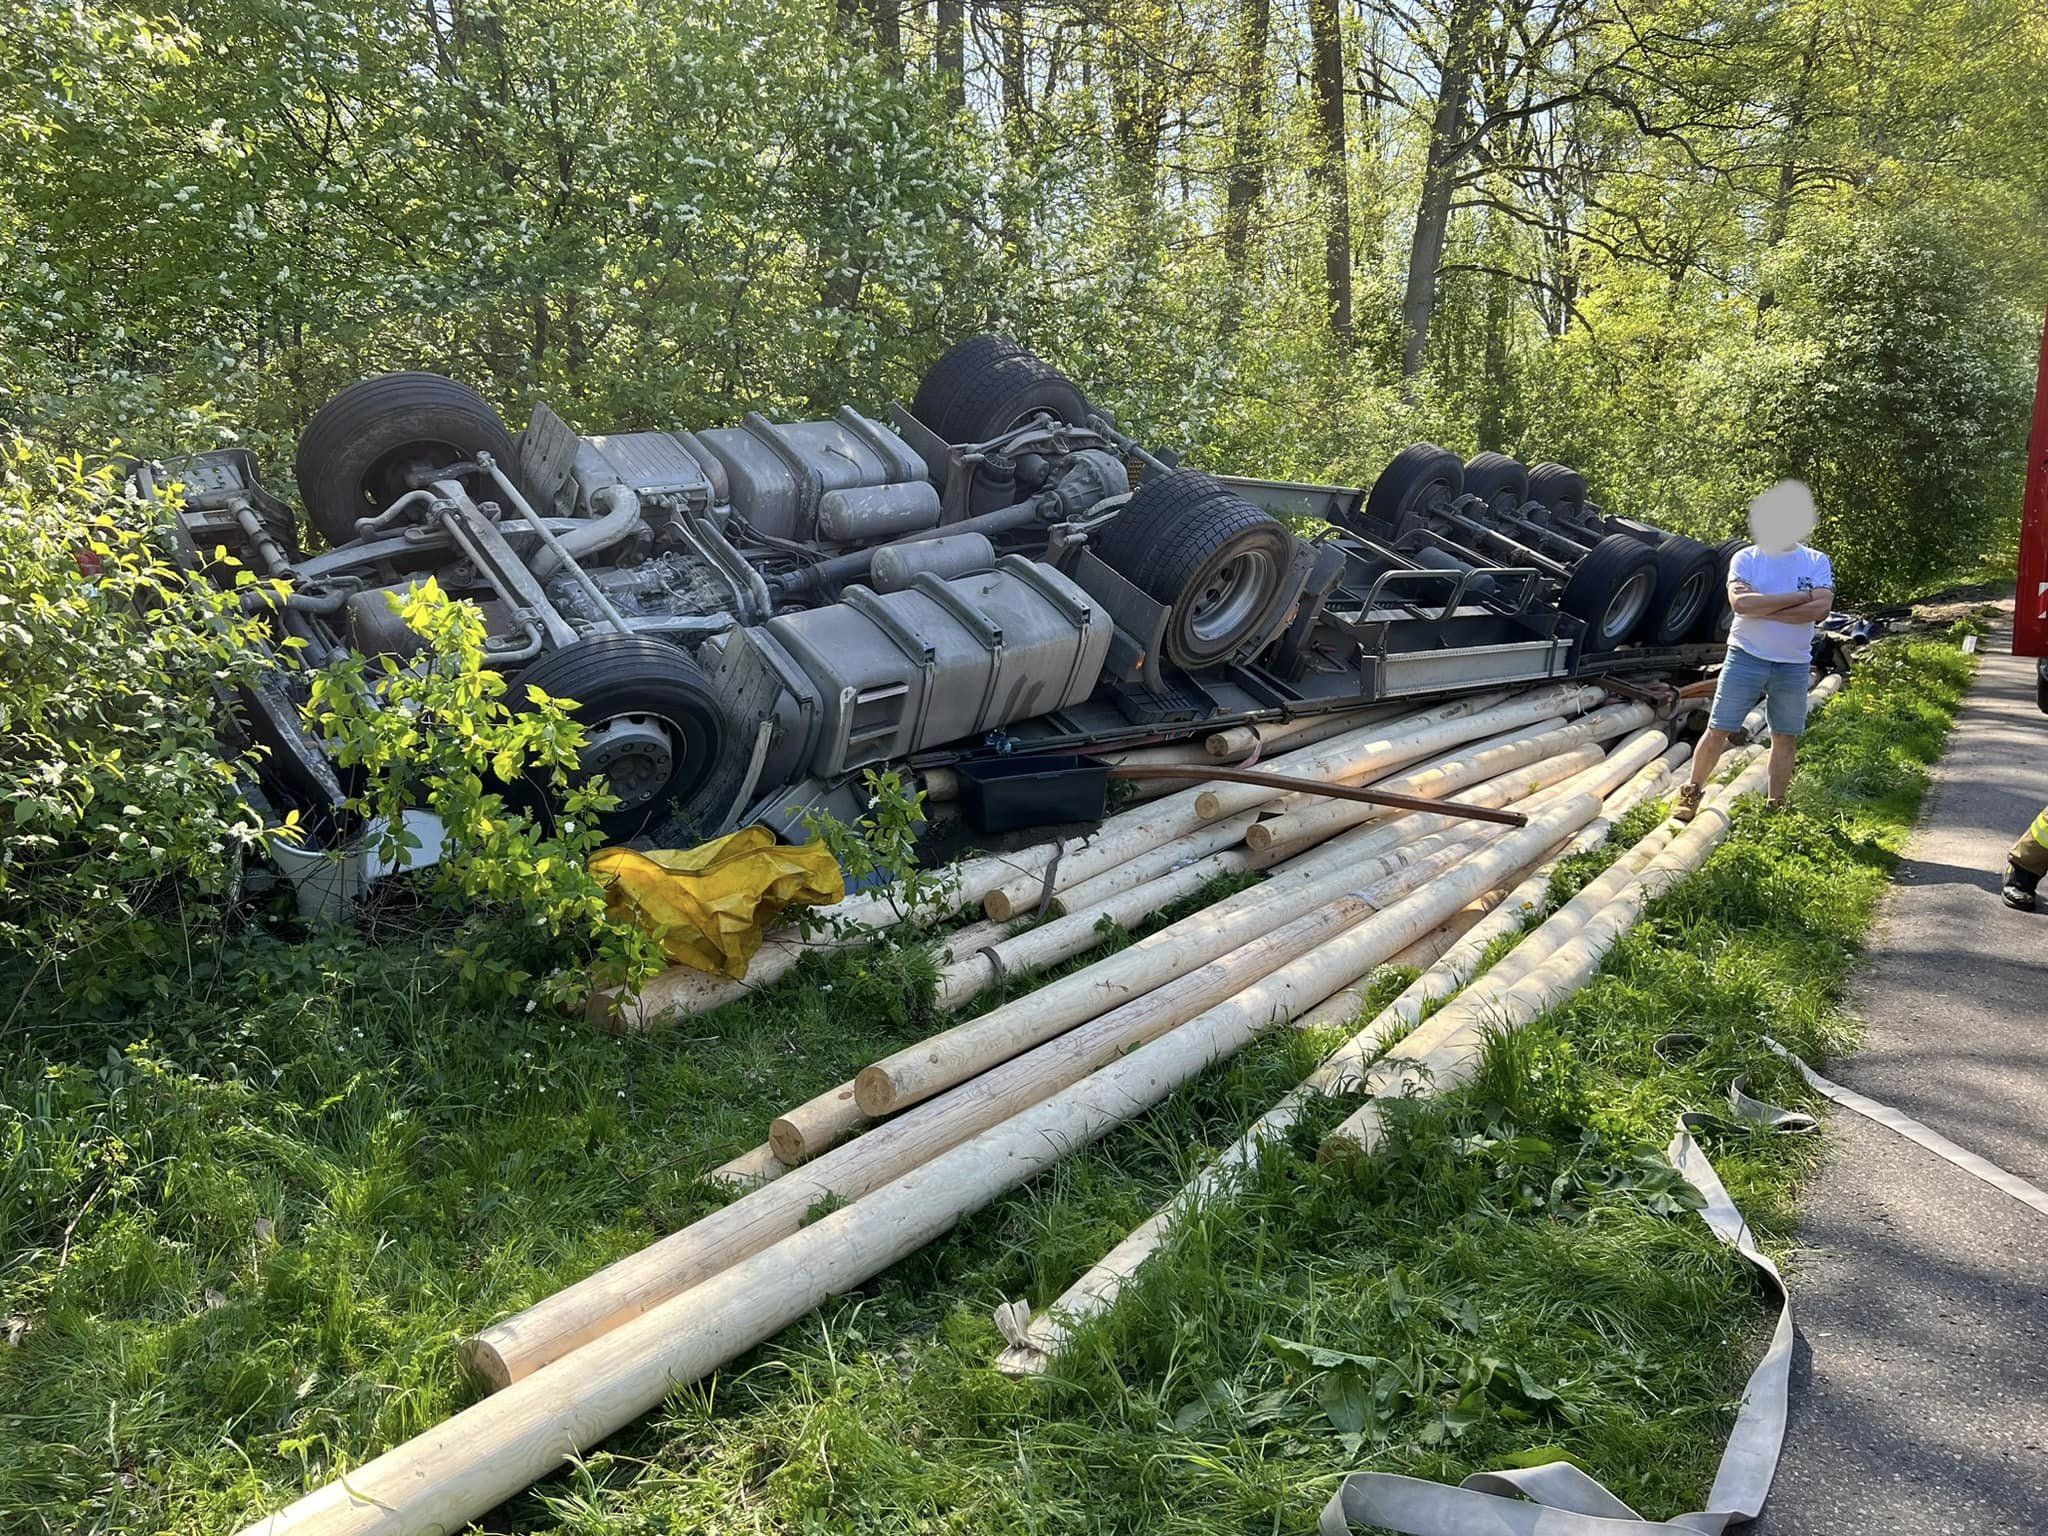 Kierowca ciężarówki cudem ocalał z potwornego zderzenia wypadek Olsztyn, Wiadomości, zShowcase